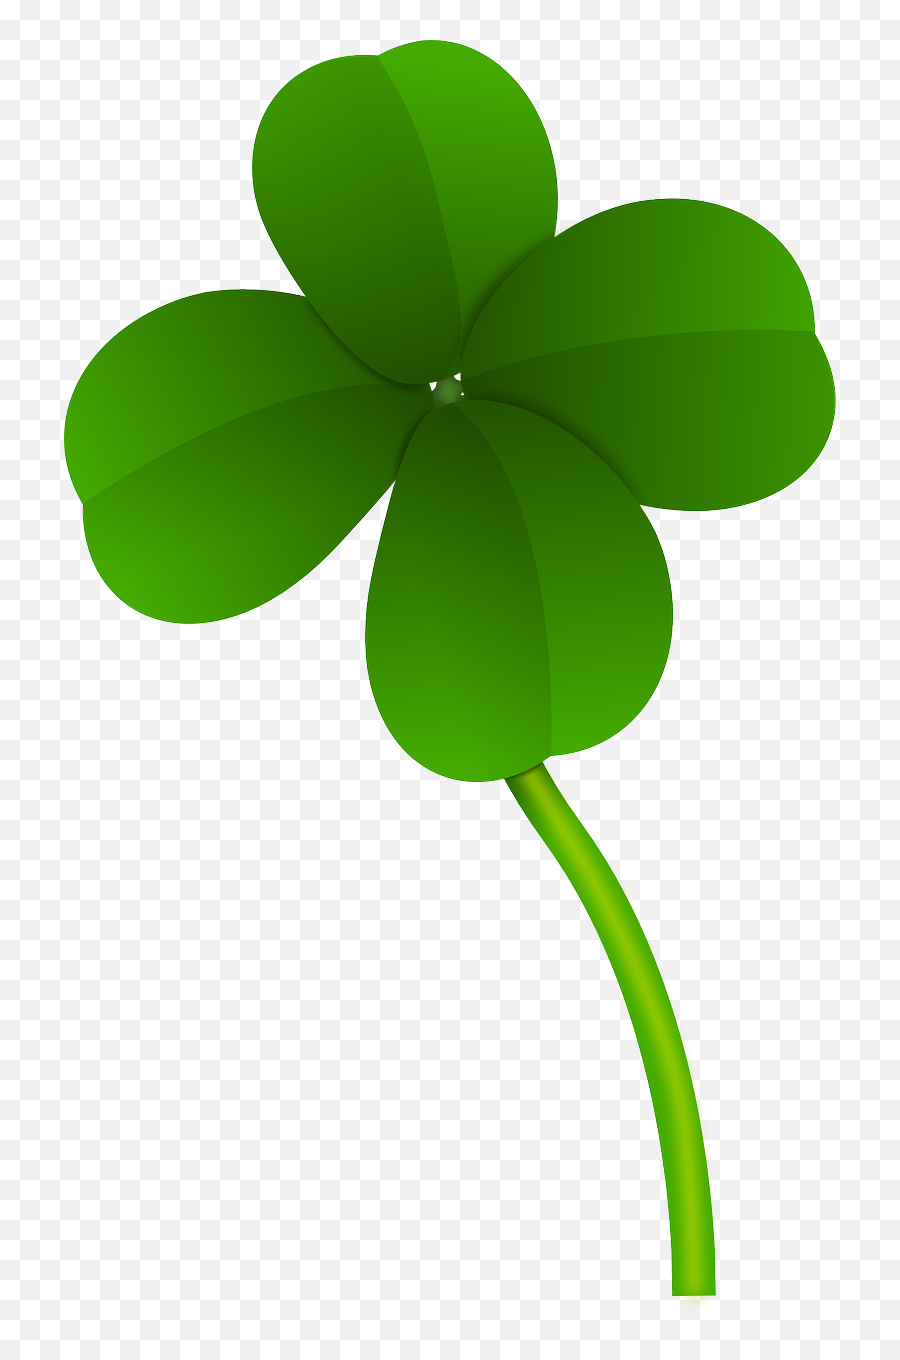 Four Leaf Clover Clip Art At Clker - Four Leaf Clover Transparent Emoji,4 Leaf Clover Clipart